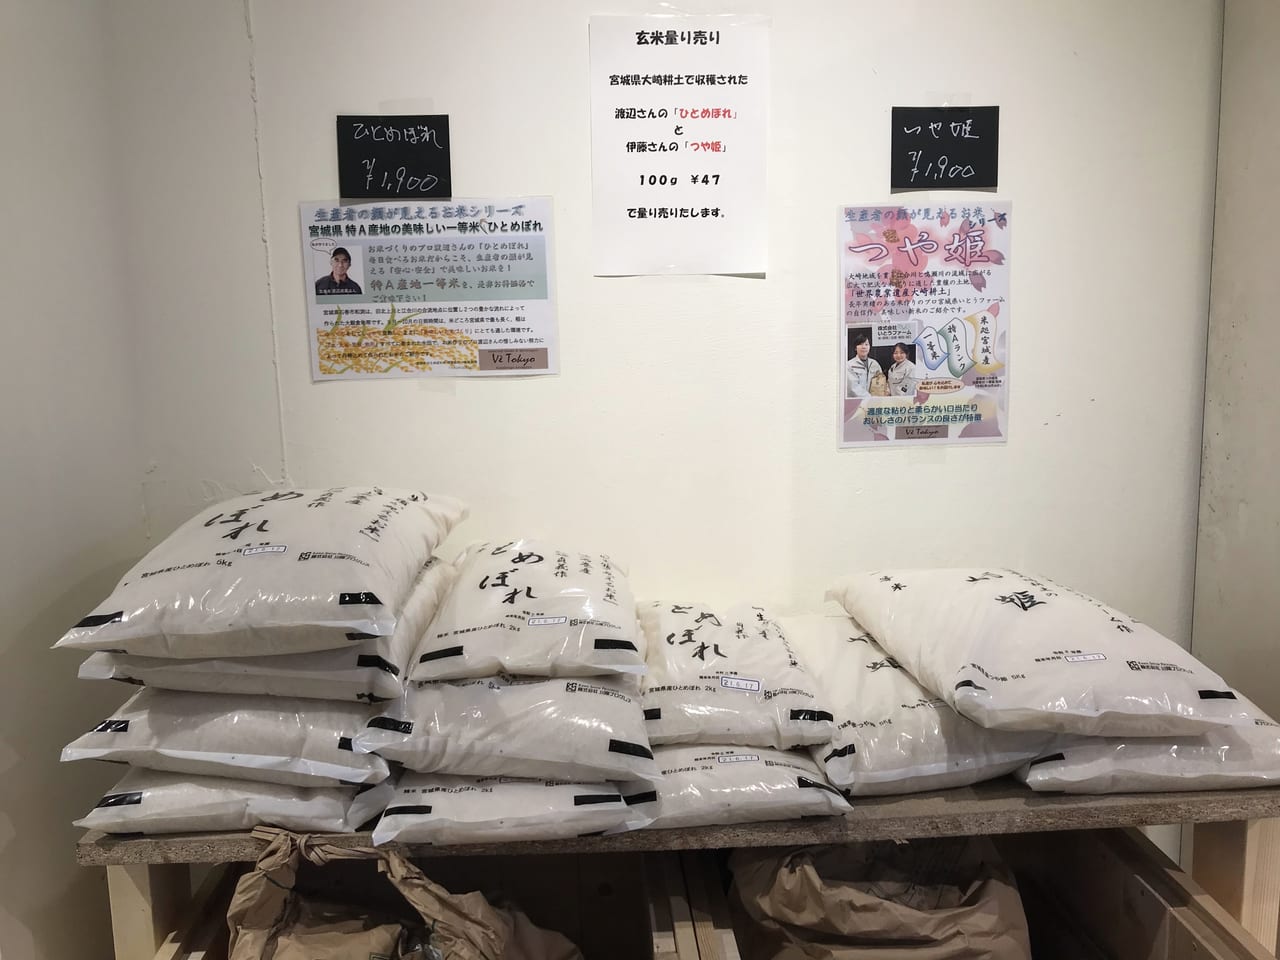 世田谷区上野毛にホルモンフリーのお肉があるファーマーズマーケット「Vè Tokyo（ヴィ・トーキョー）」が2021年6月19日にグランドオープンしました。